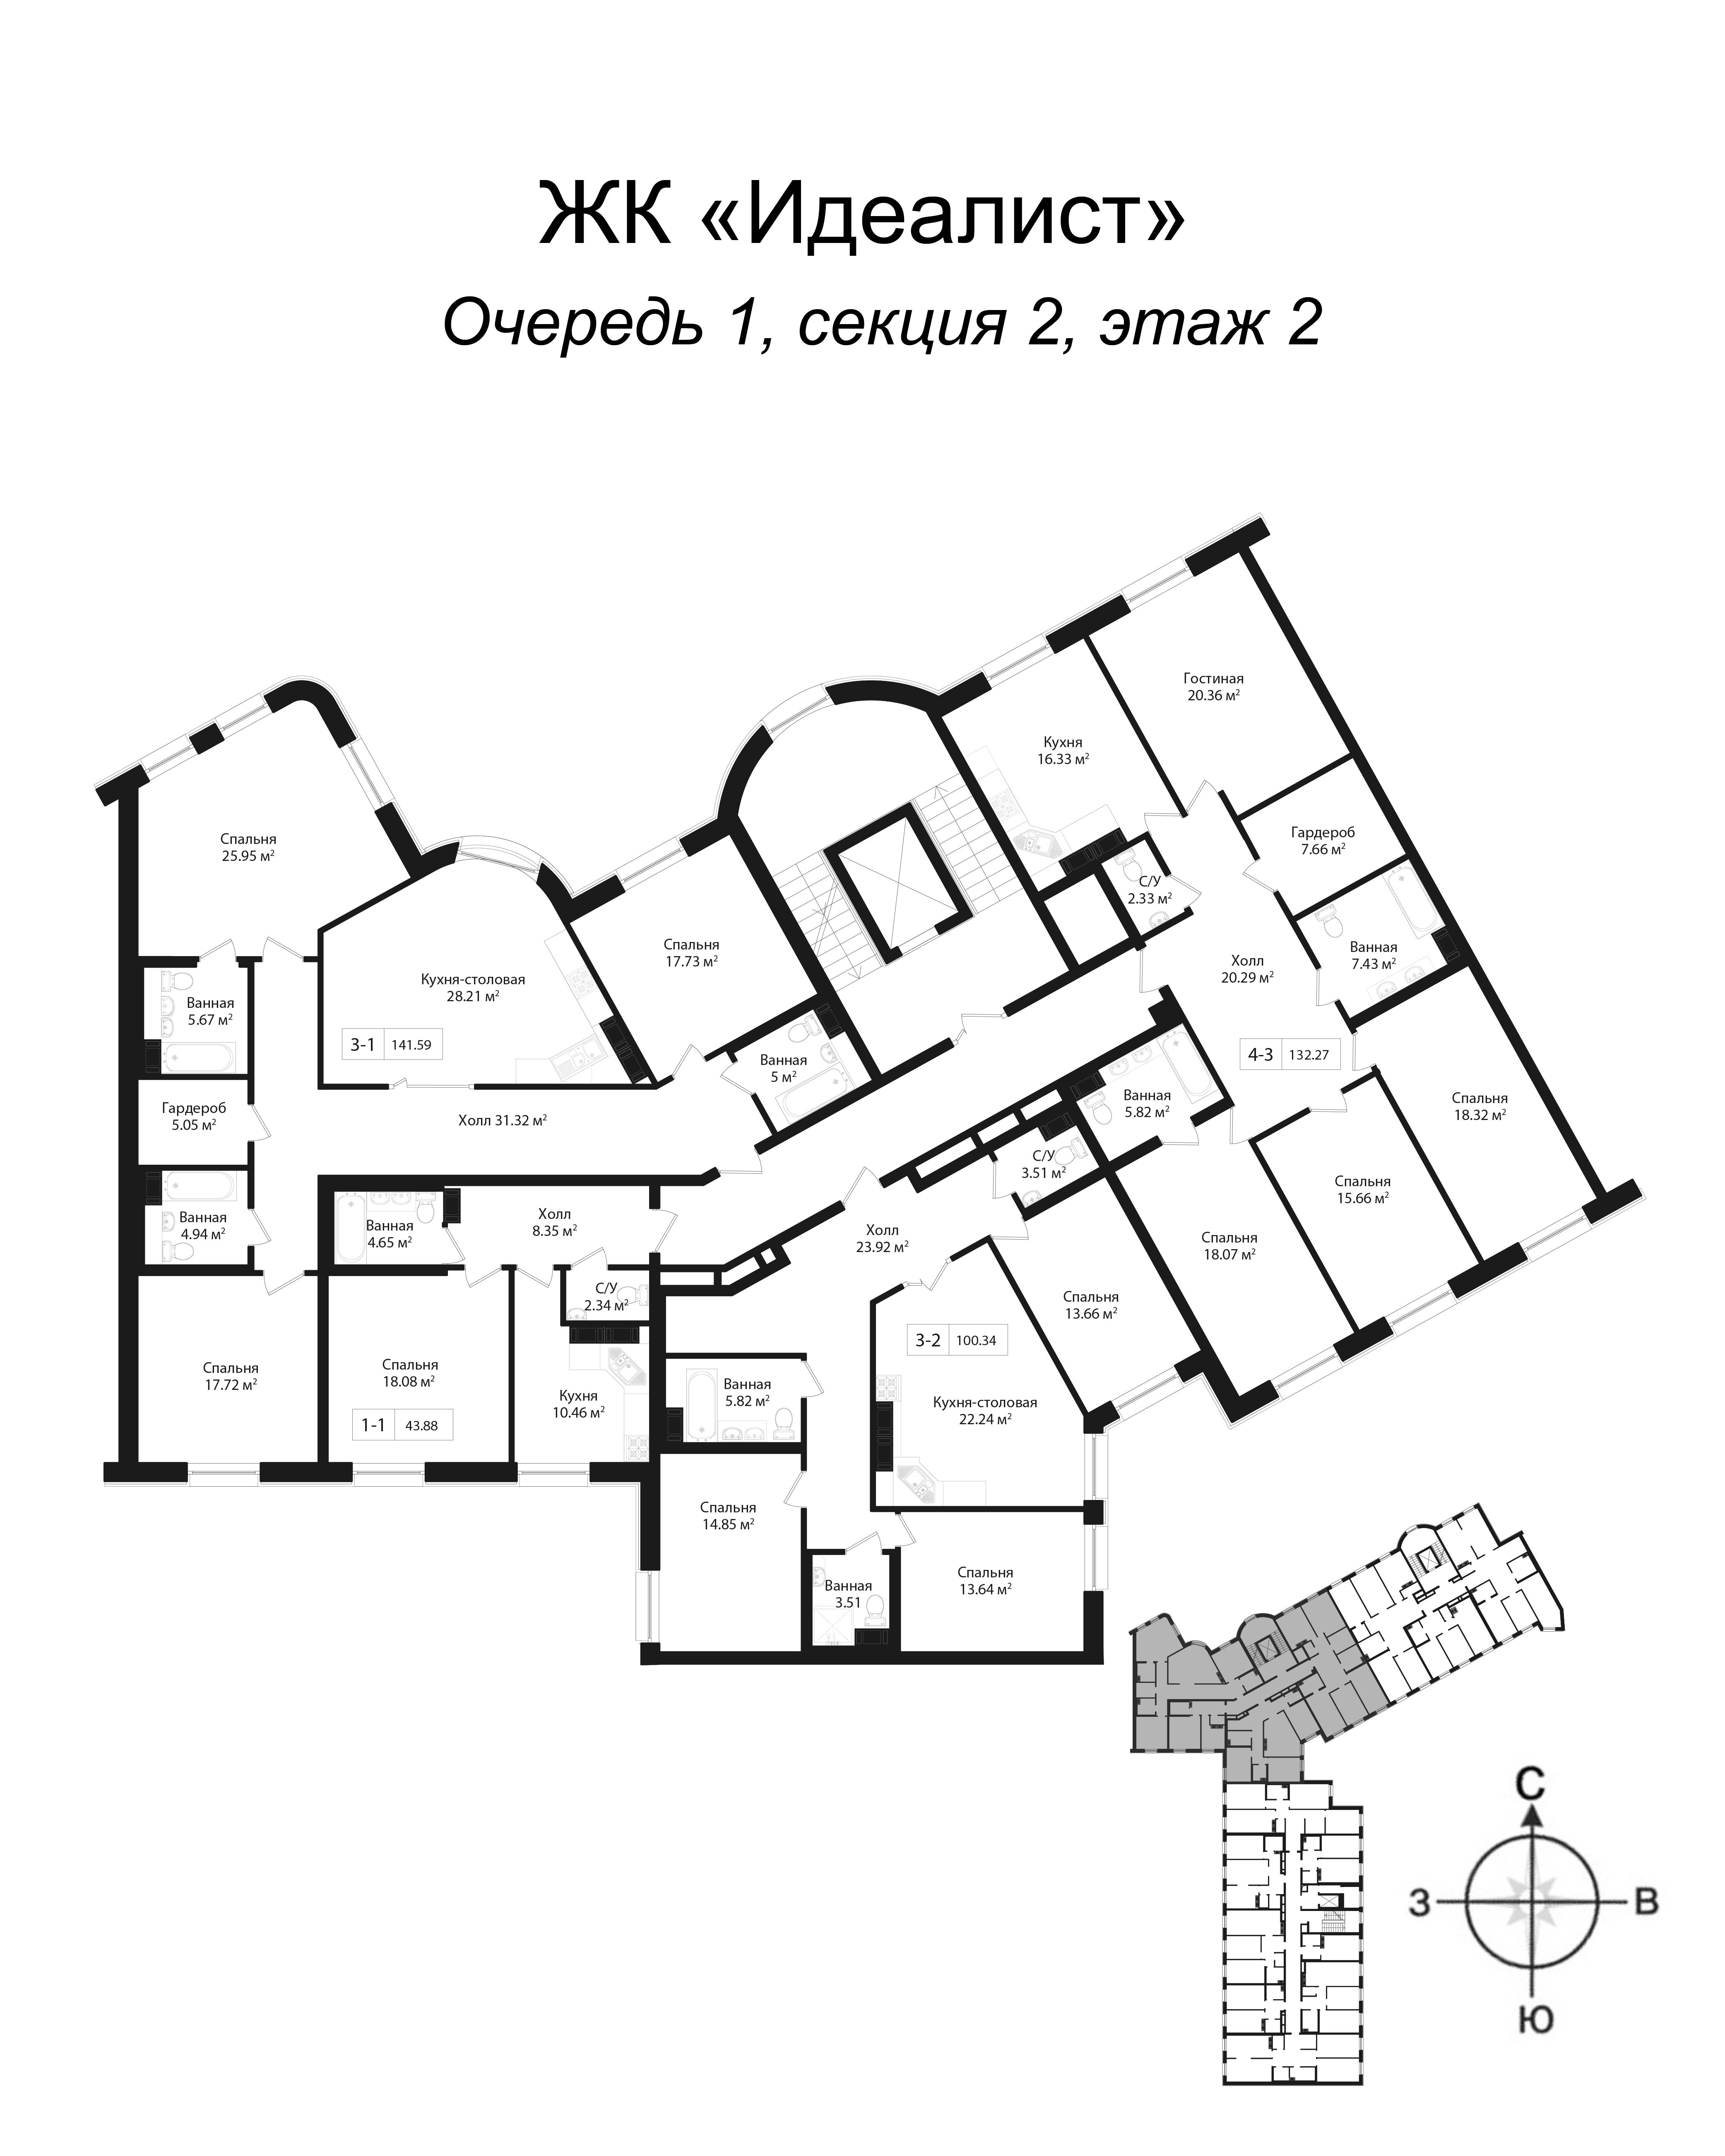 3-комнатная квартира, 144 м² в ЖК "Идеалист" - планировка этажа